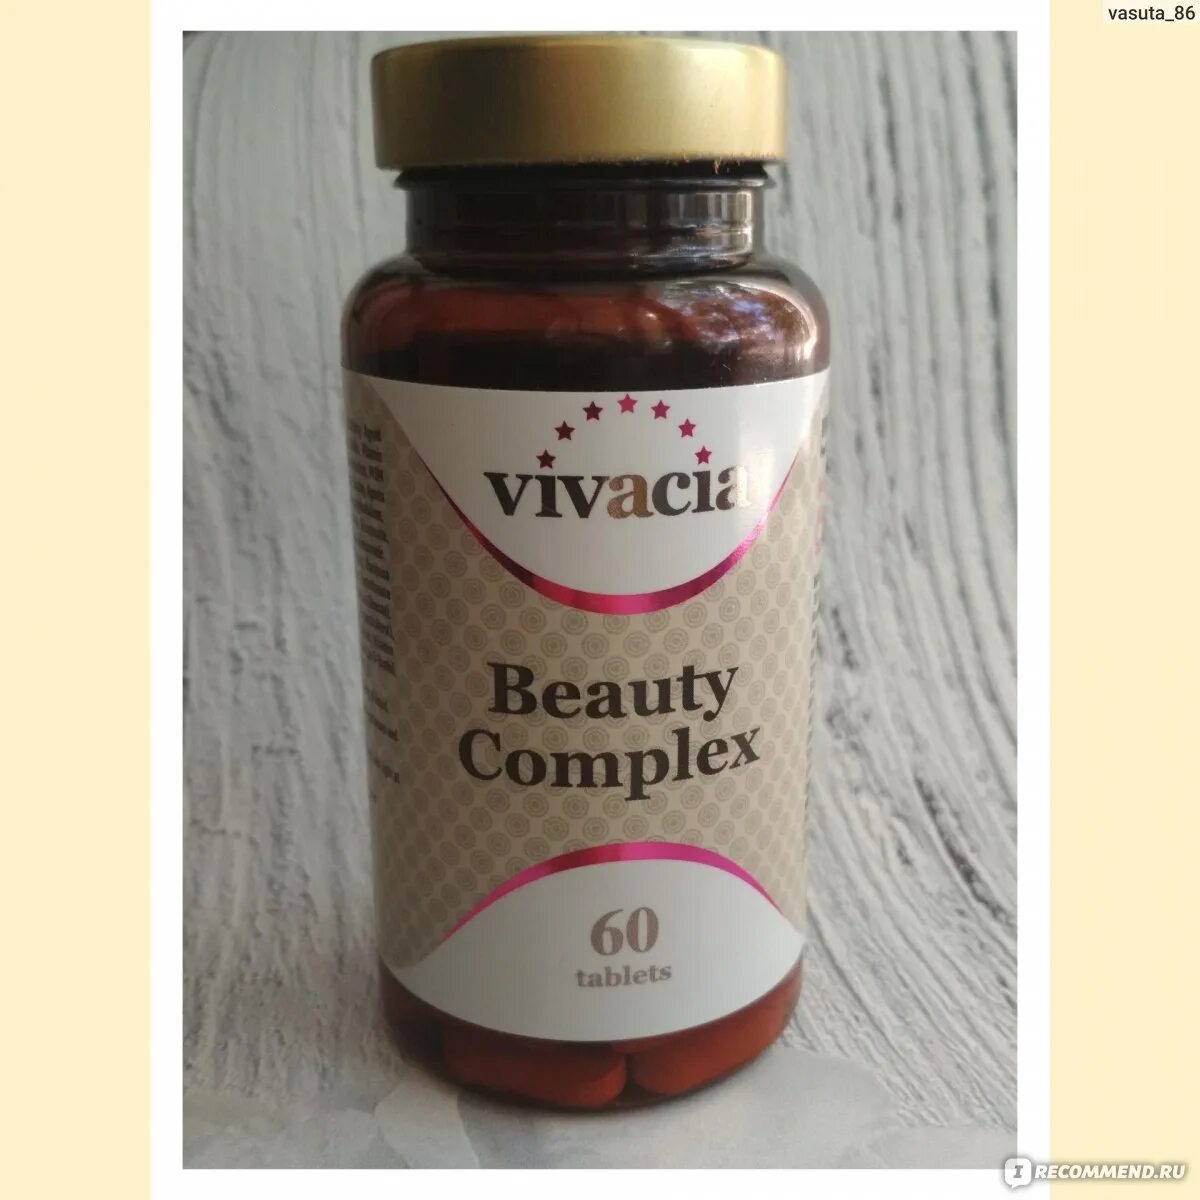 Vivacia vitamin. Витамины Англия vivacia. Vivacia витамины Complex. Вивация витамины Бьюти. Vivacia Beauty Complex таблетки.